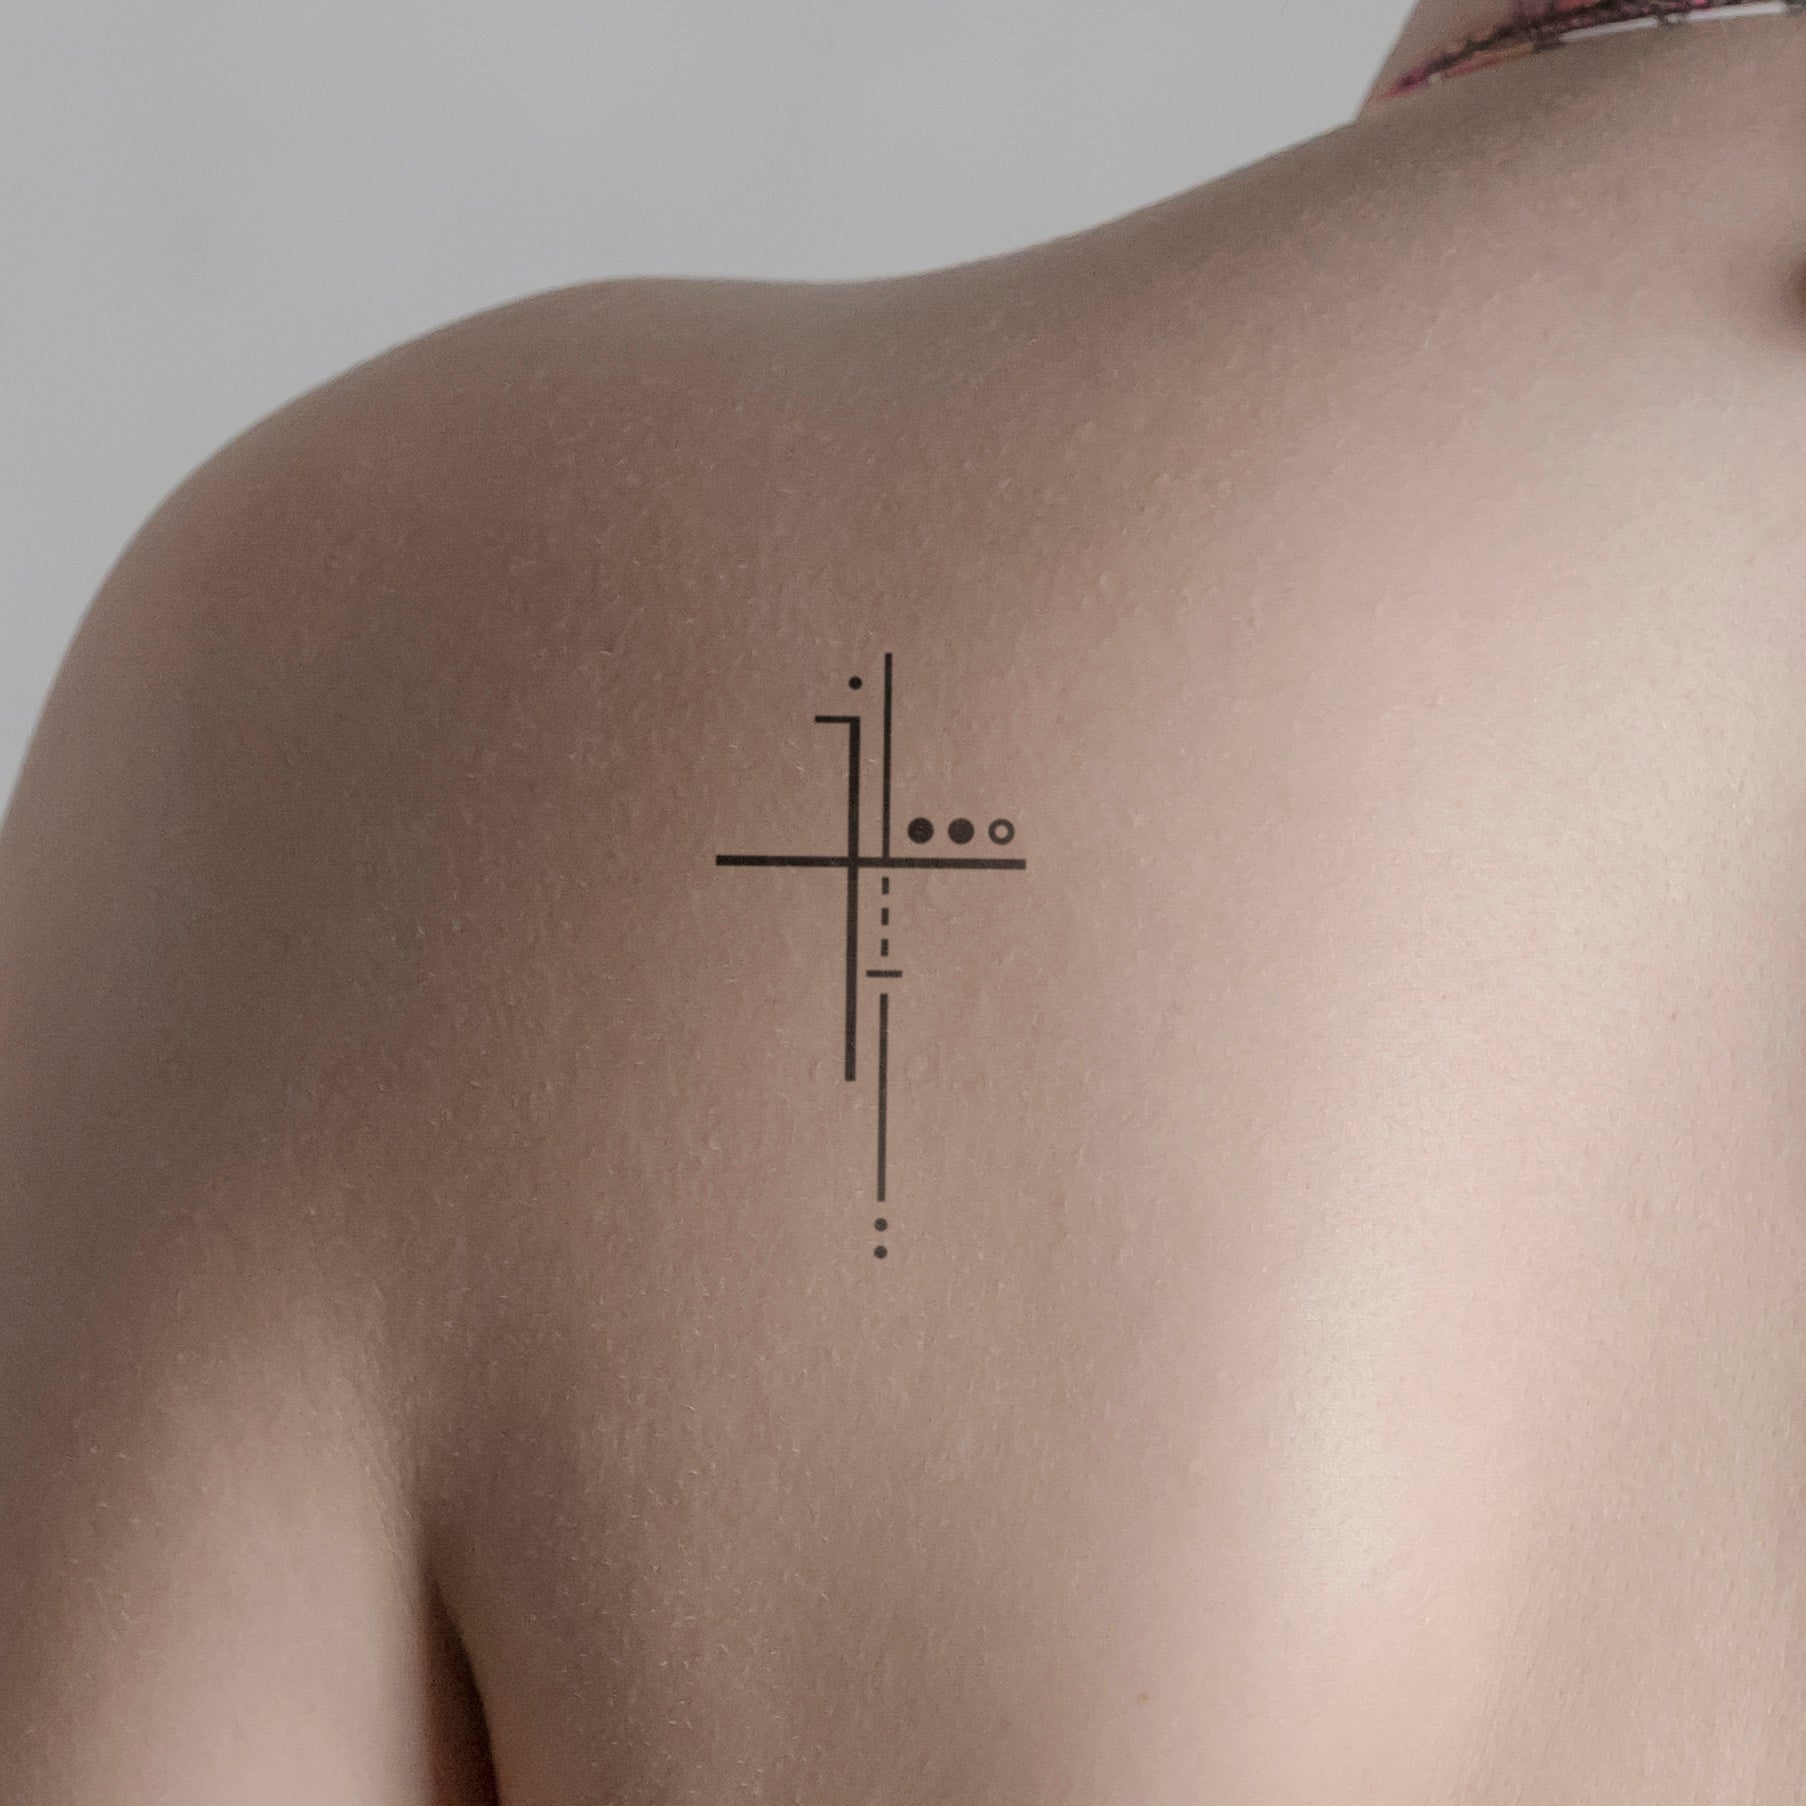 Abstraktes Kreuz 2 Tattoo von minink, der Marke für temporäre Tattoos.